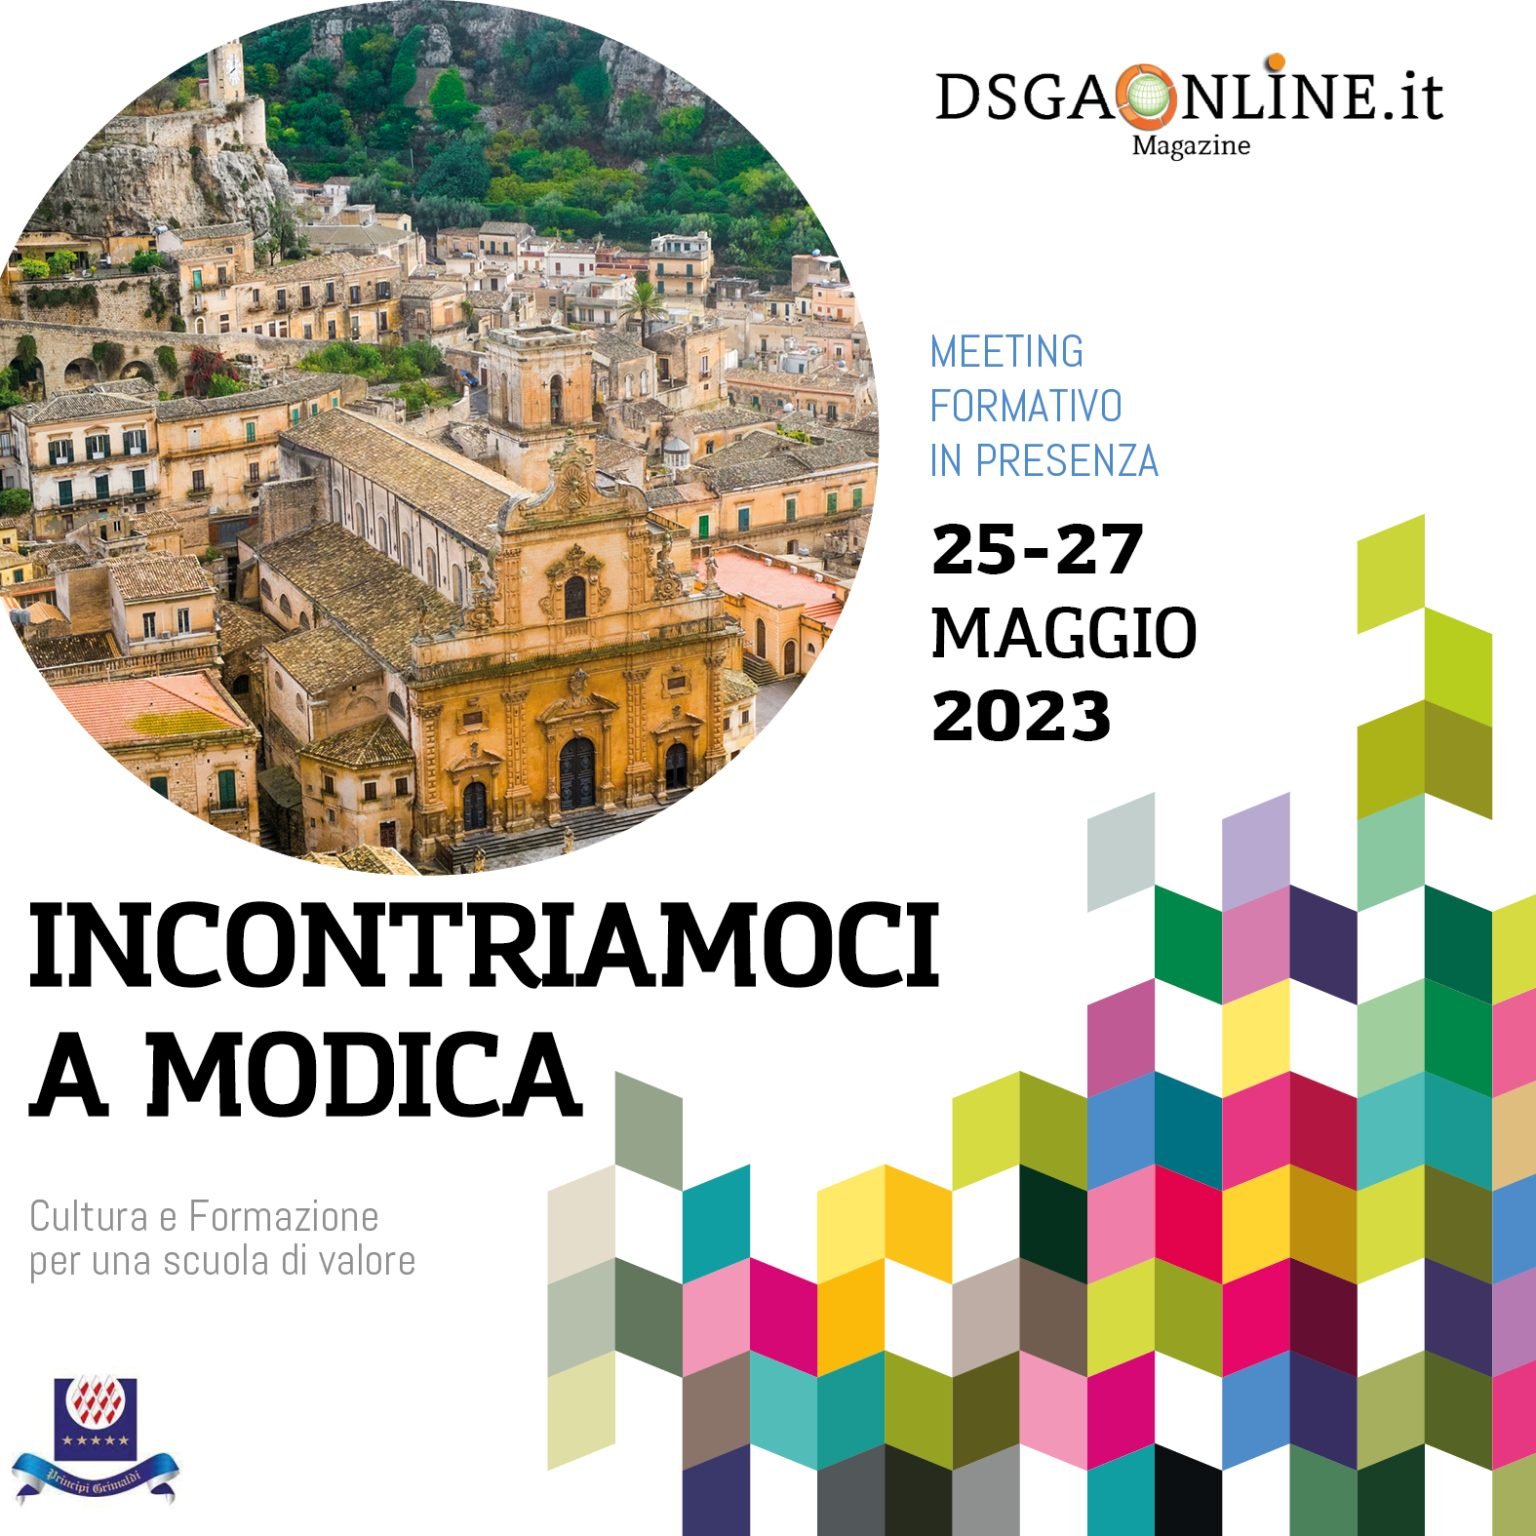 Domani Eurosofia partecipa ad INCONTRIAMOCI 2023- Cultura e formazione per una scuola di valore- Meeting formativo in presenza. Modica 25-27 maggio 2023.  